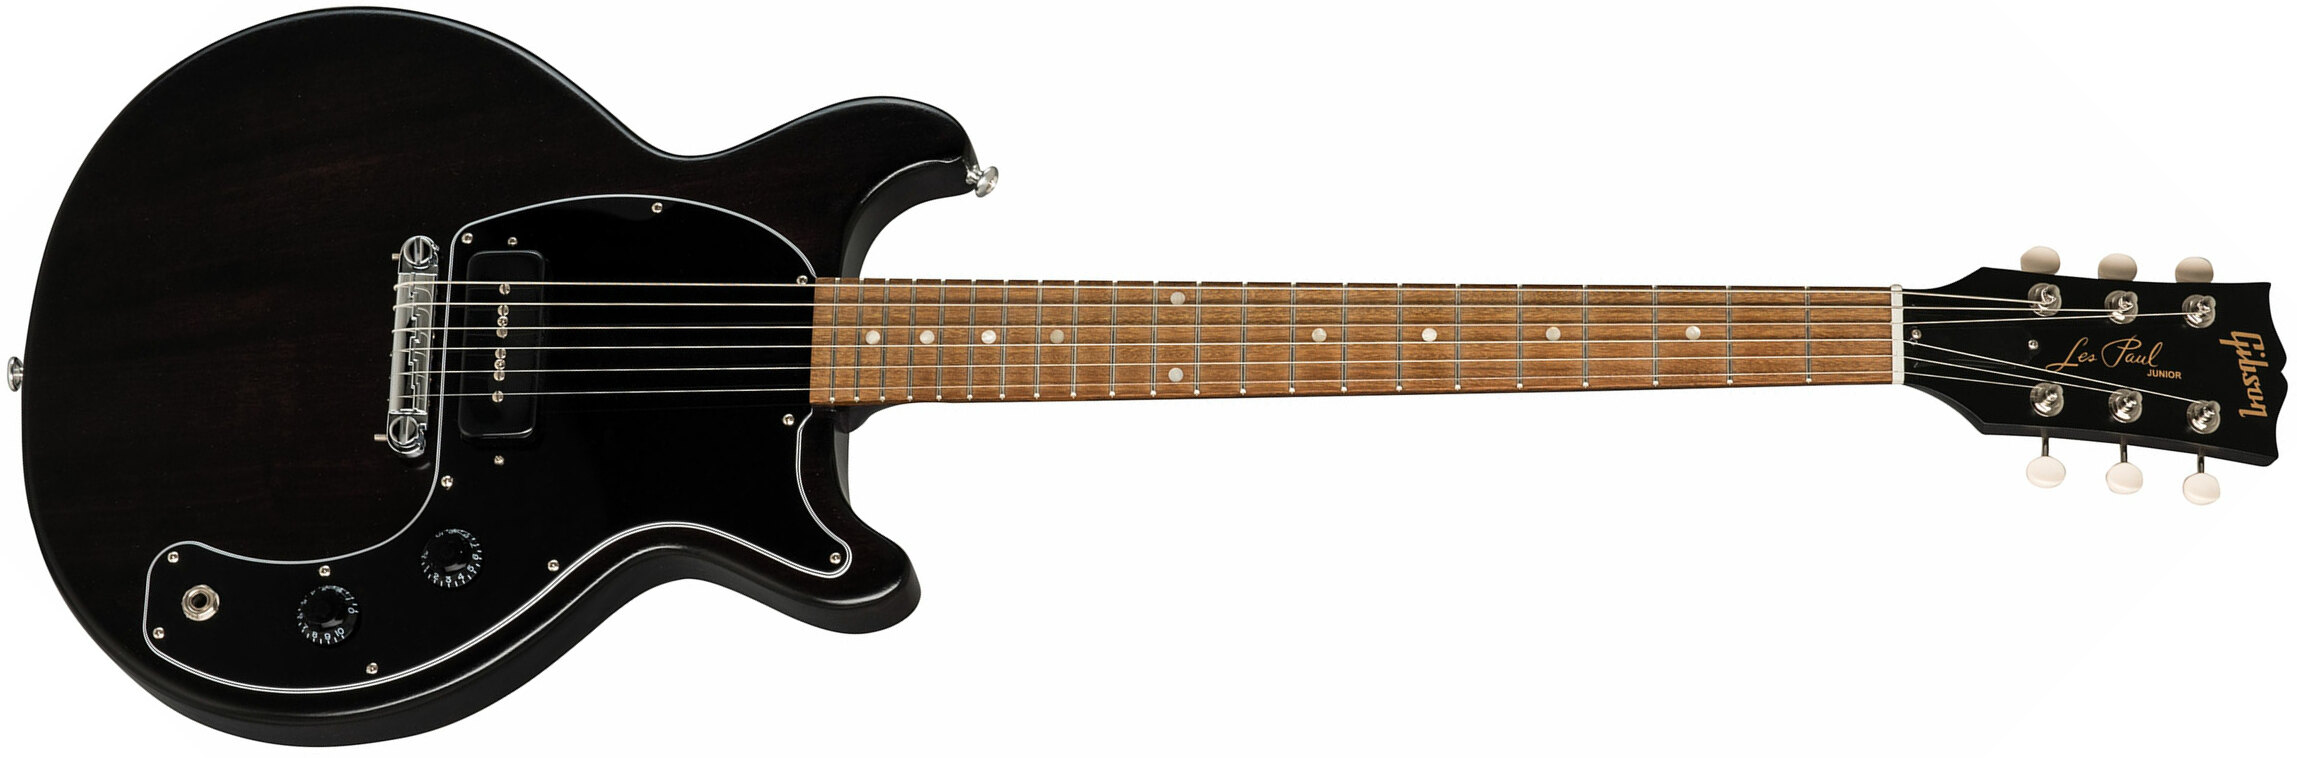 Gibson Les Paul Junior Dc Tribute 2019 P90 Ht Rw - Worn Ebony - Guitare Électrique Single Cut - Main picture